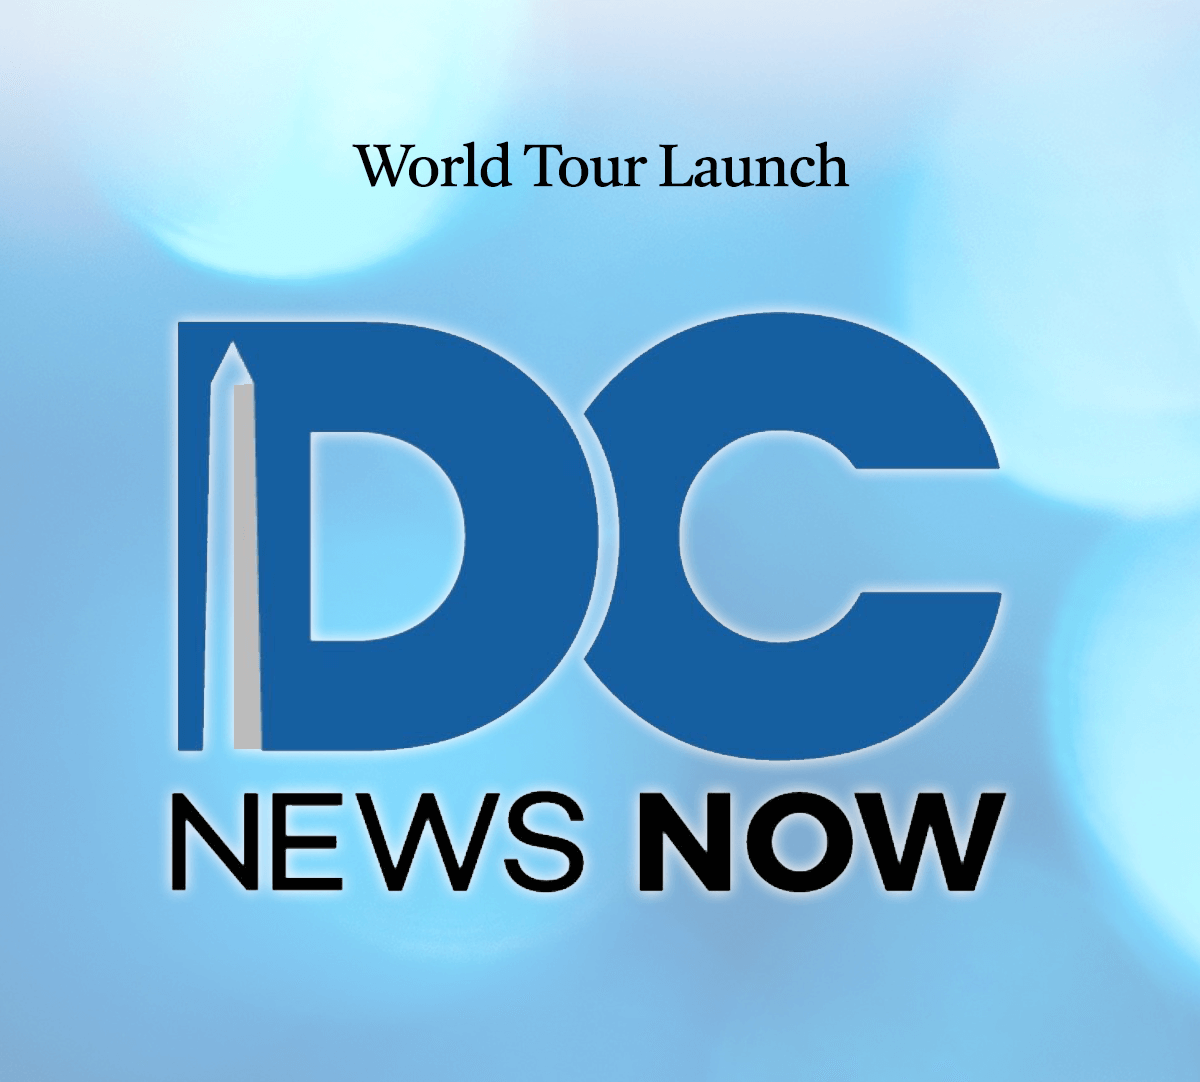 World Tour Launch • News